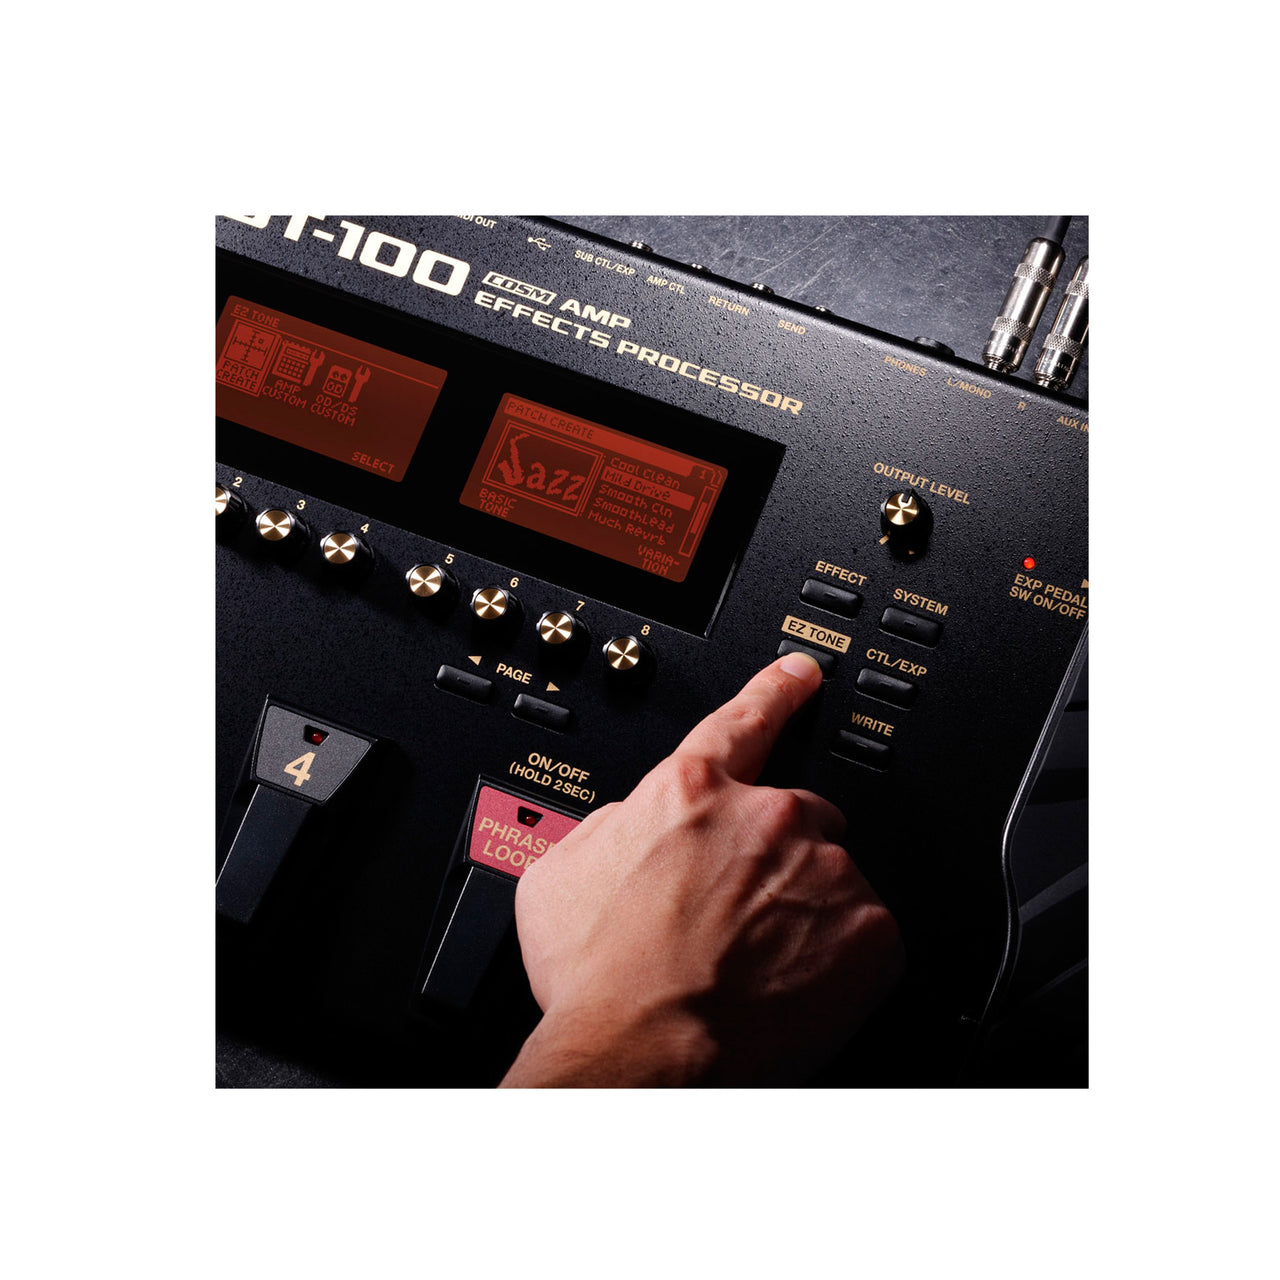 Pedalera Boss Con Efectos Y Amplificadores Cosm Gt-100